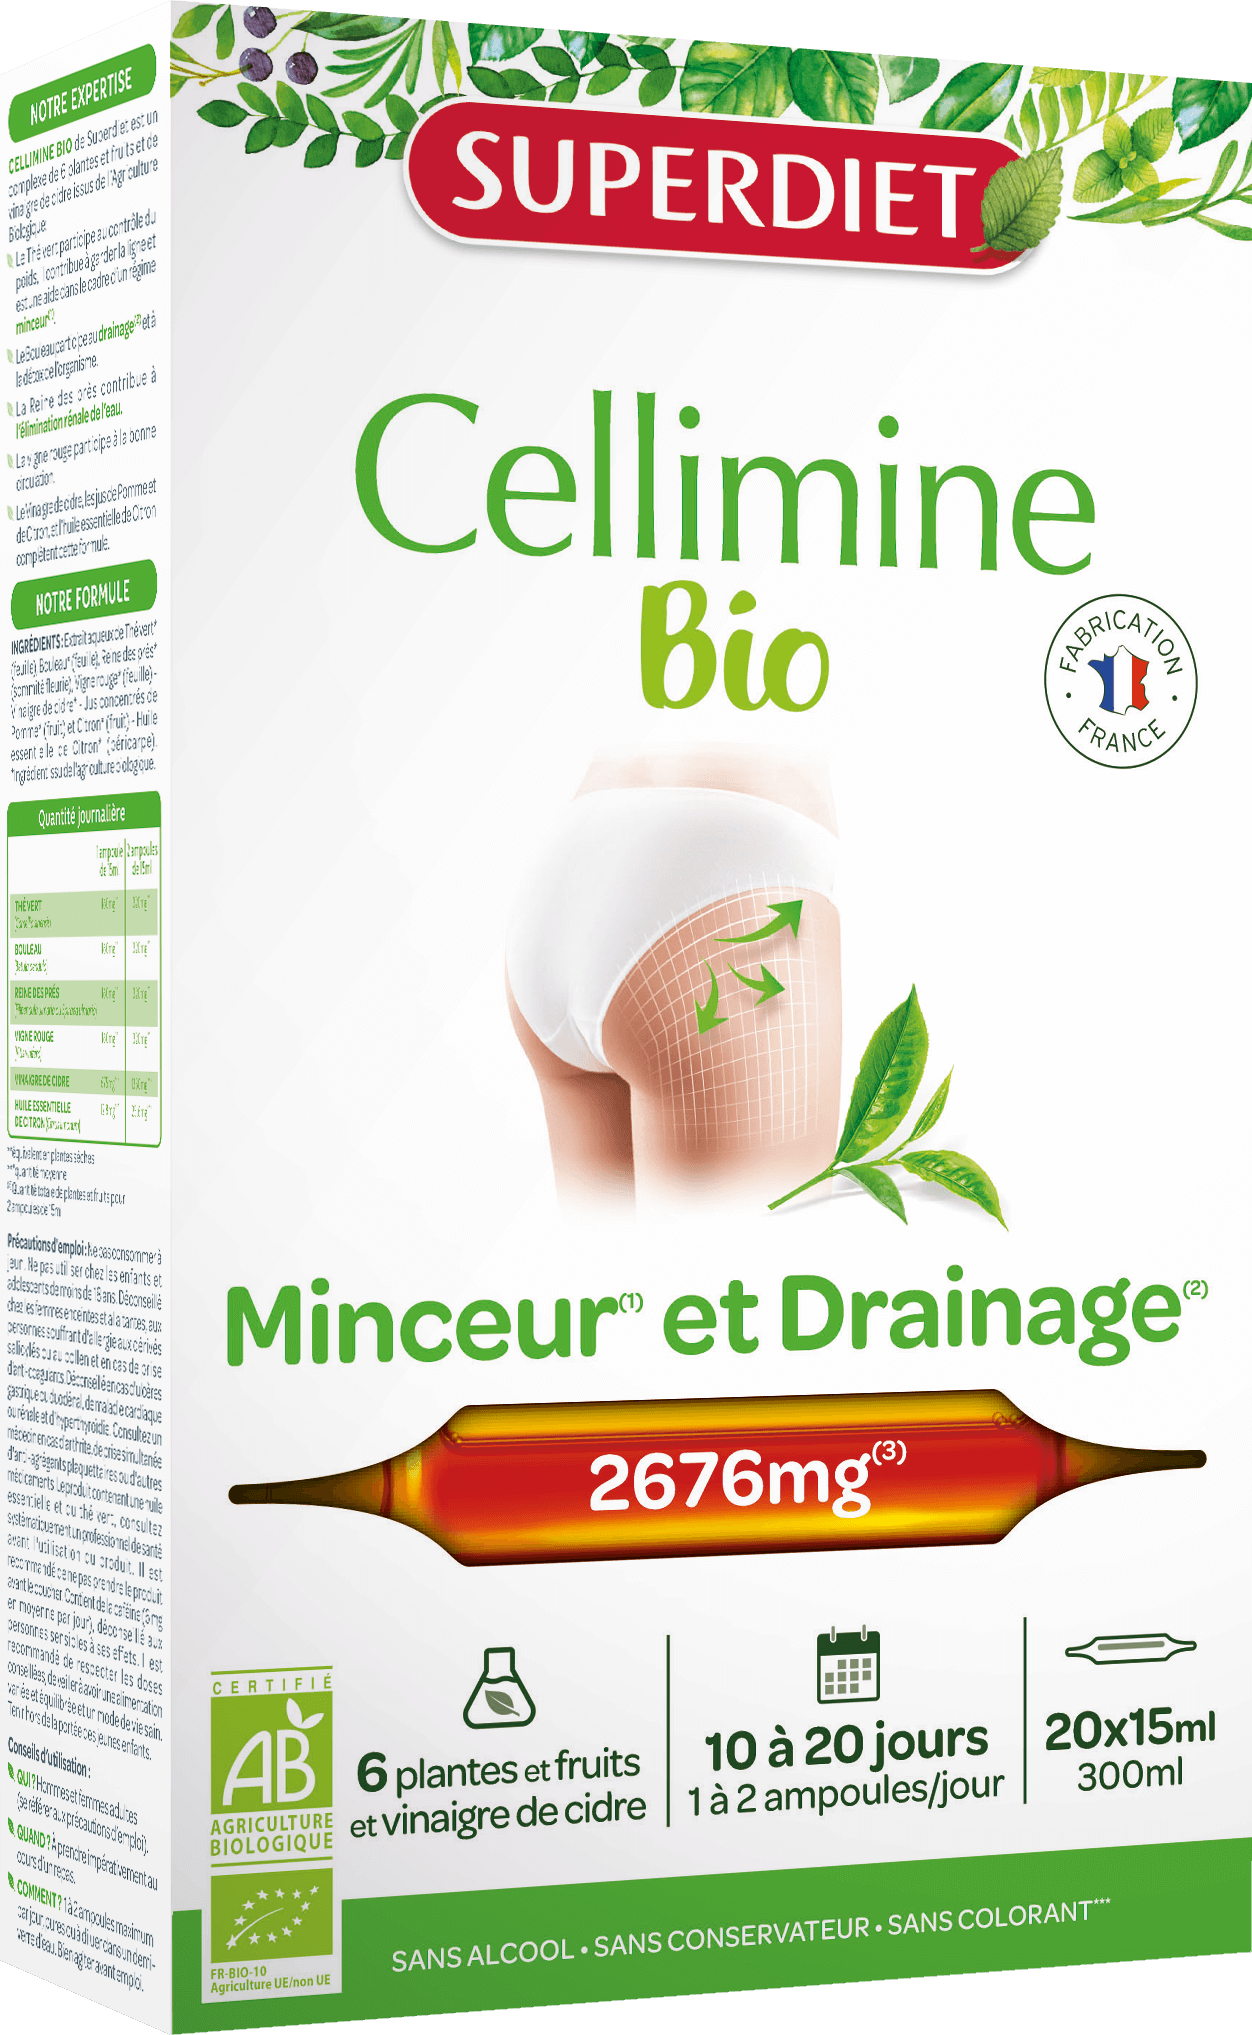 Super Diet Cellimine minceur bio 20x15ml PL 483/88